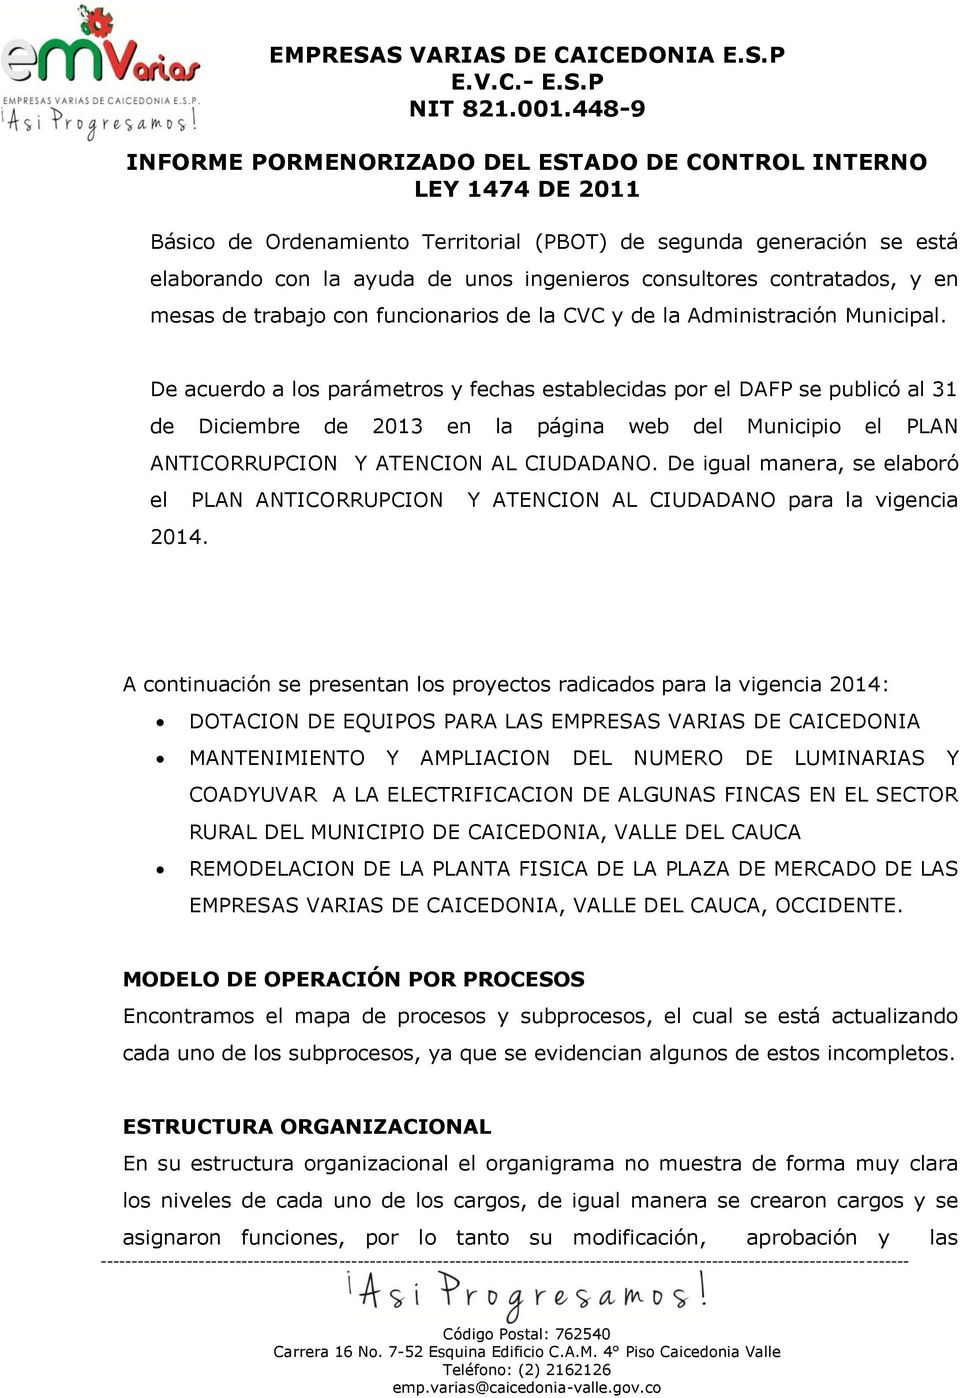 De acuerdo a los parámetros y fechas establecidas por el DAFP se publicó al 31 de Diciembre de 2013 en la página web del Municipio el PLAN ANTICORRUPCION Y ATENCION AL CIUDADANO.